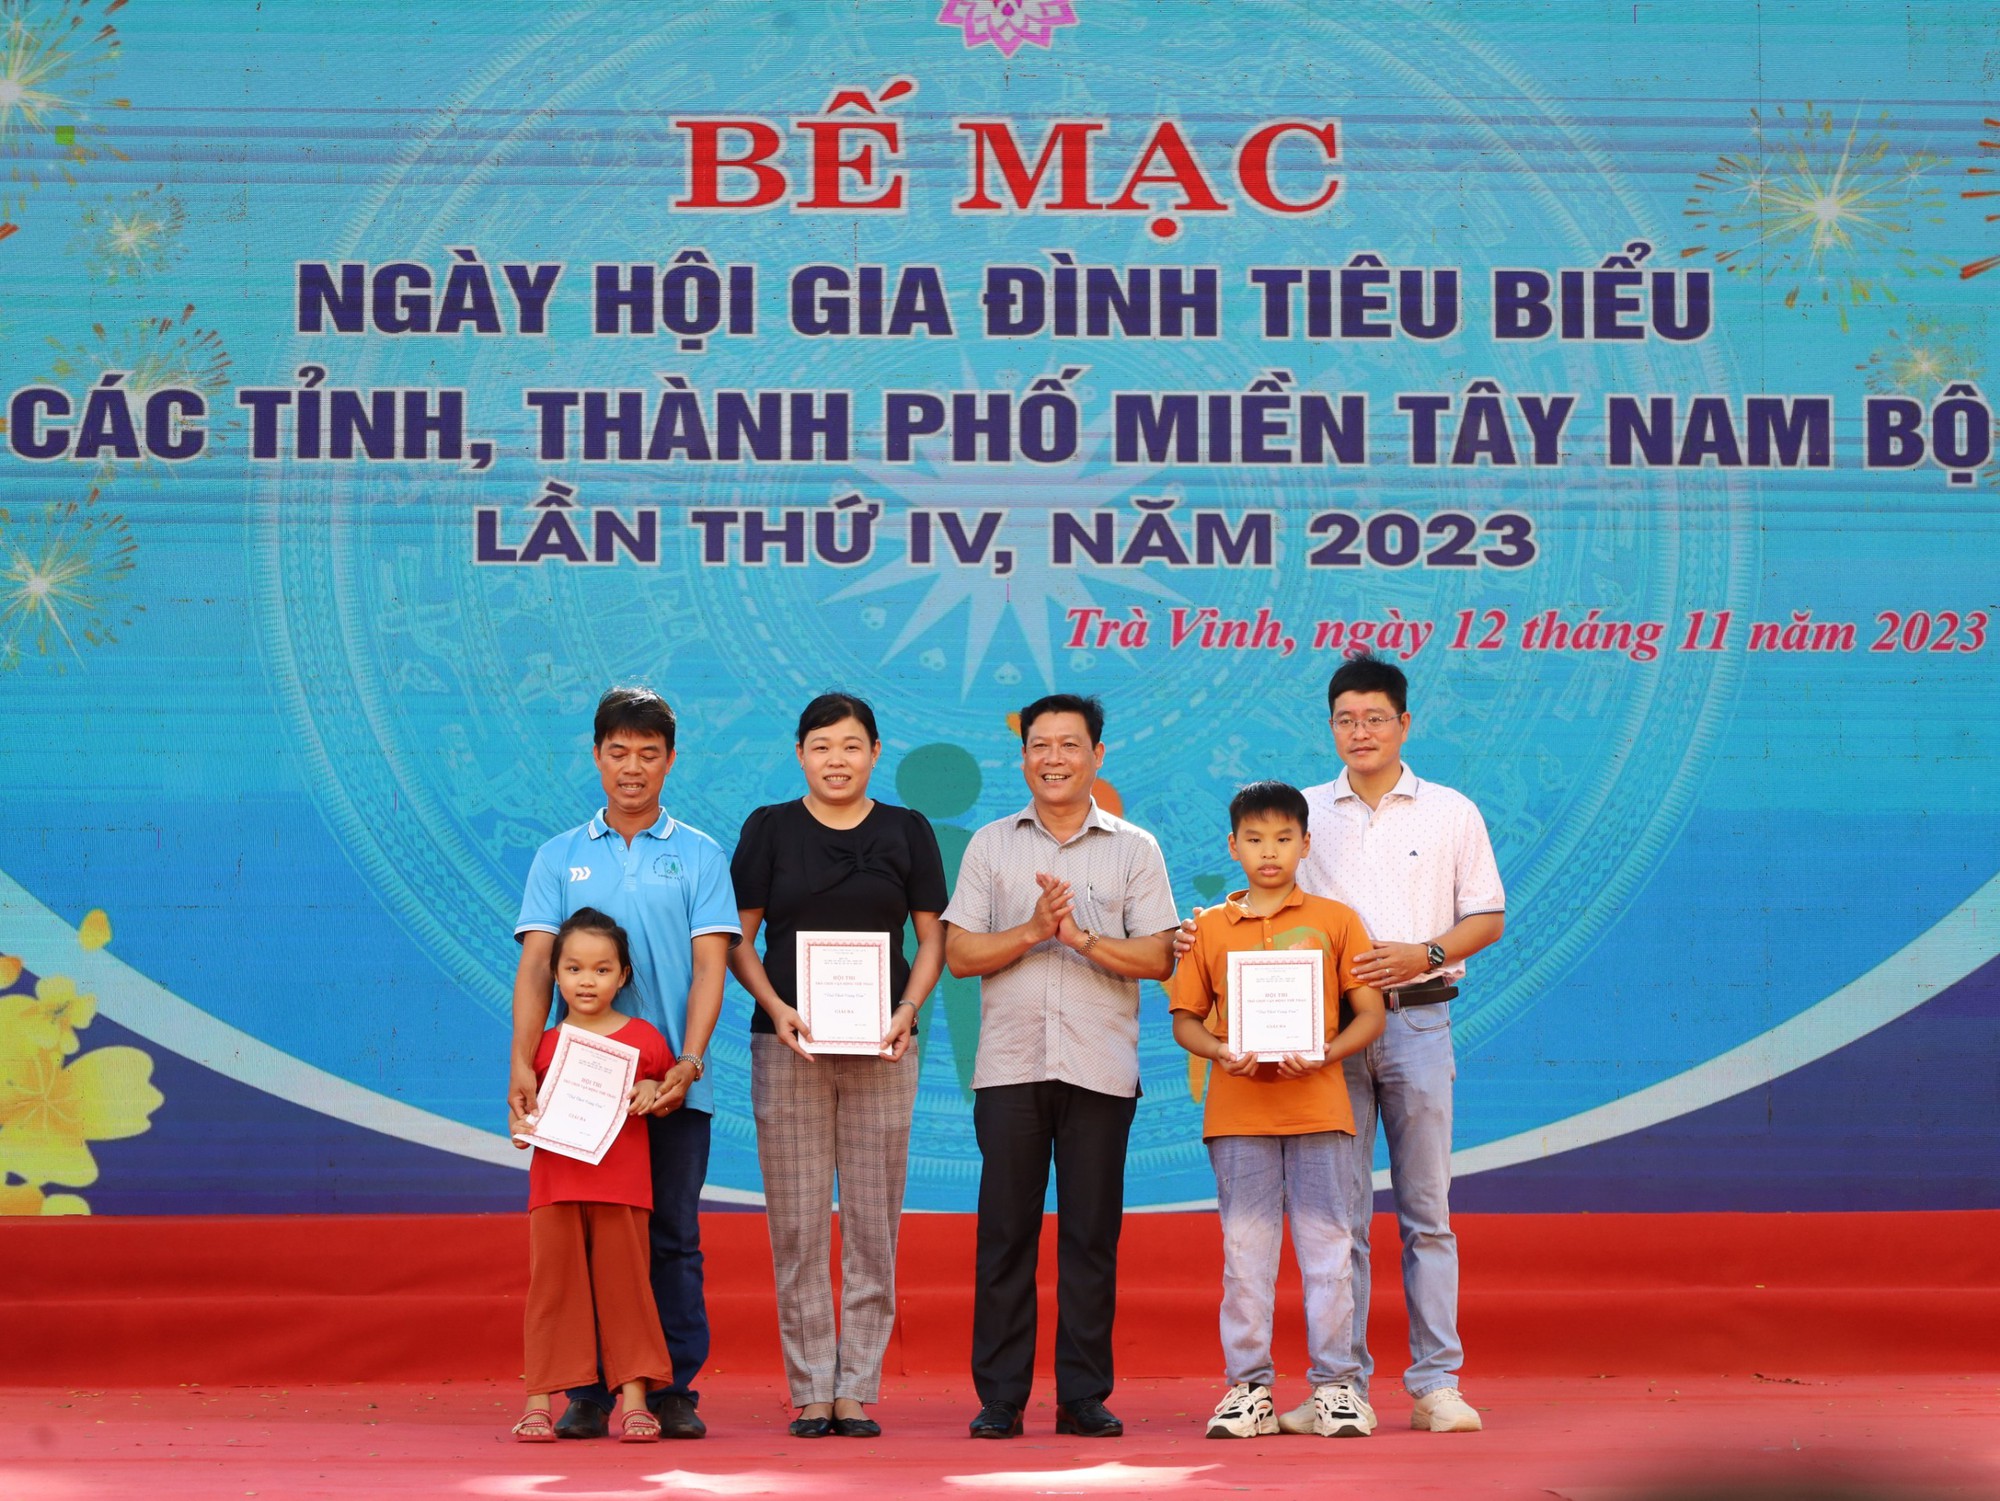 Bế mạc và trao giải Ngày hội Gia đình tiêu biểu miền Tây Nam Bộ - Ảnh 9.